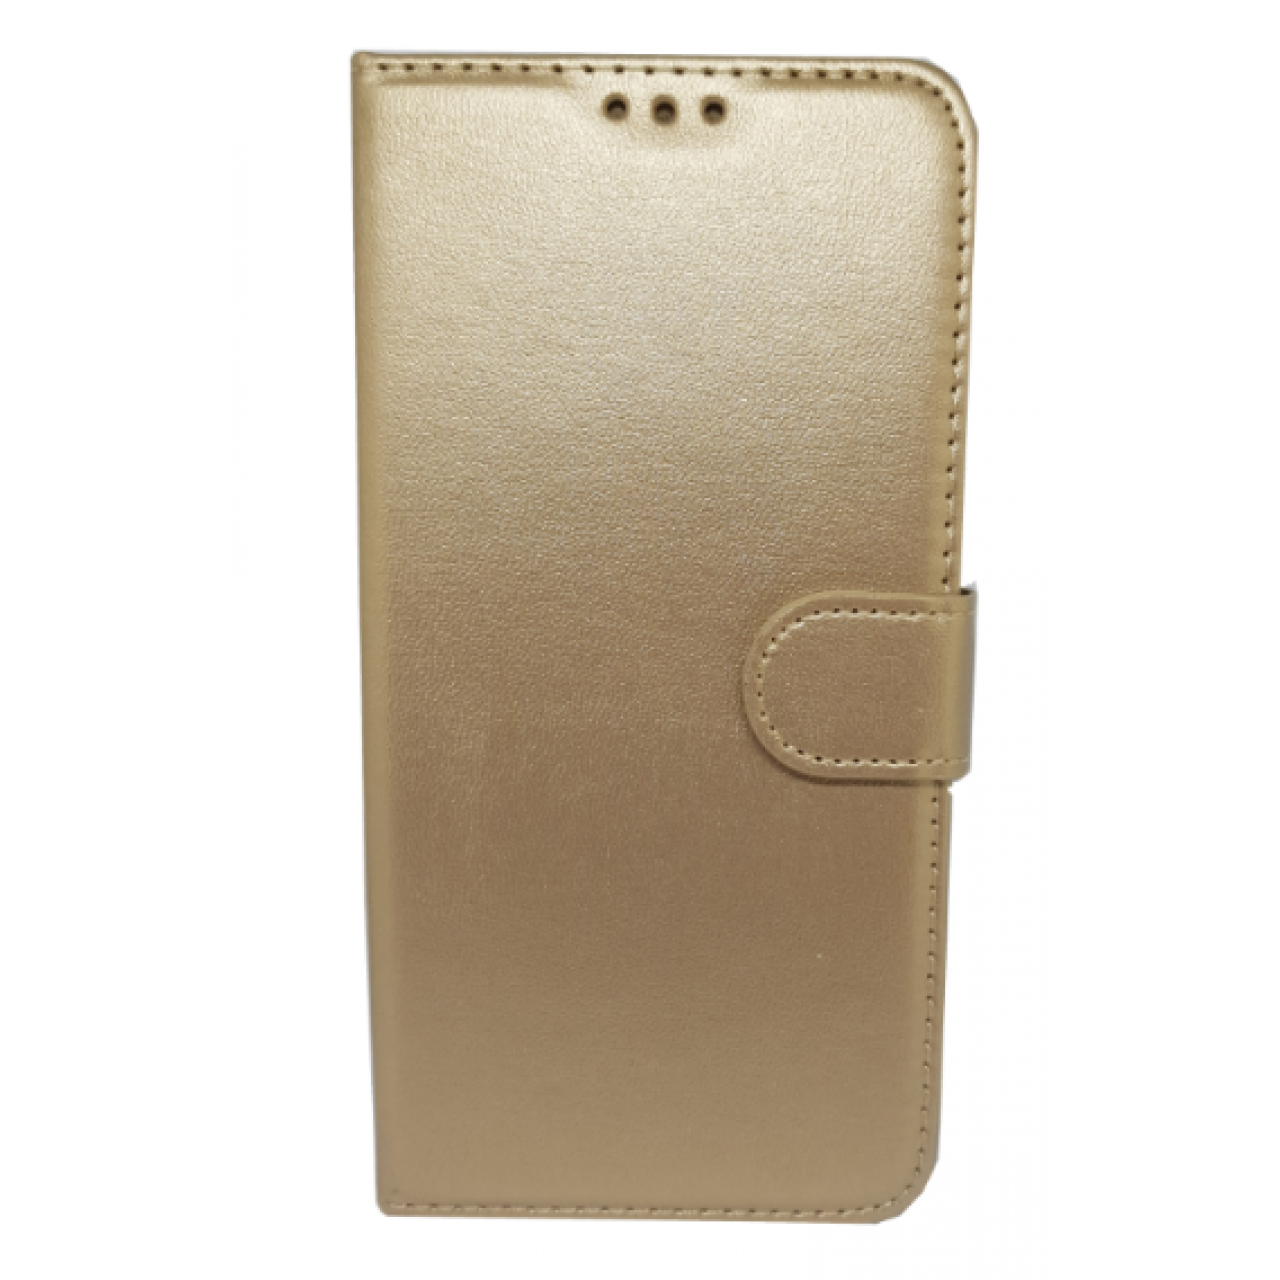 Θήκη Huawei P20 Pro PU Leather Πορτοφόλι - 3998 - Χρυσό - OEM